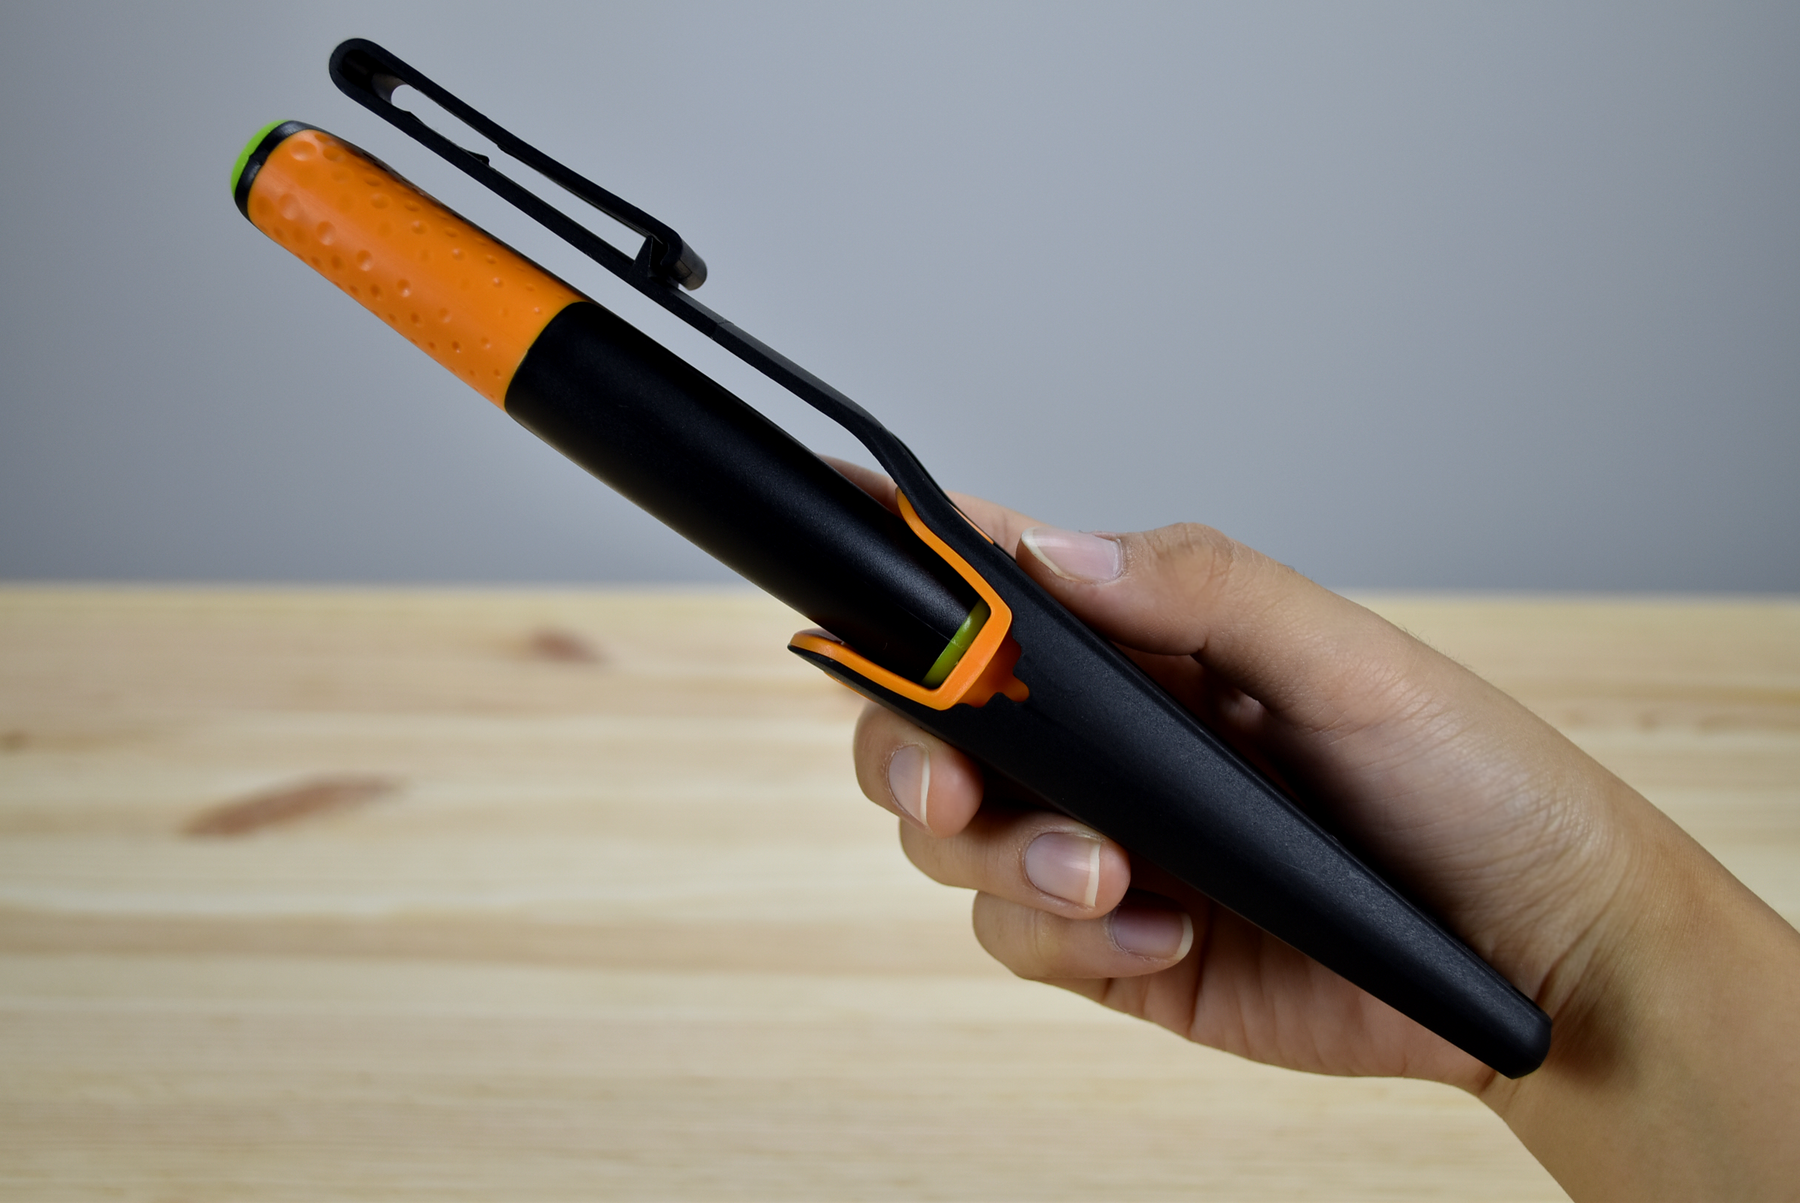 Fiskars Heavy Duty Knife with Sharpener - Thomas Tools